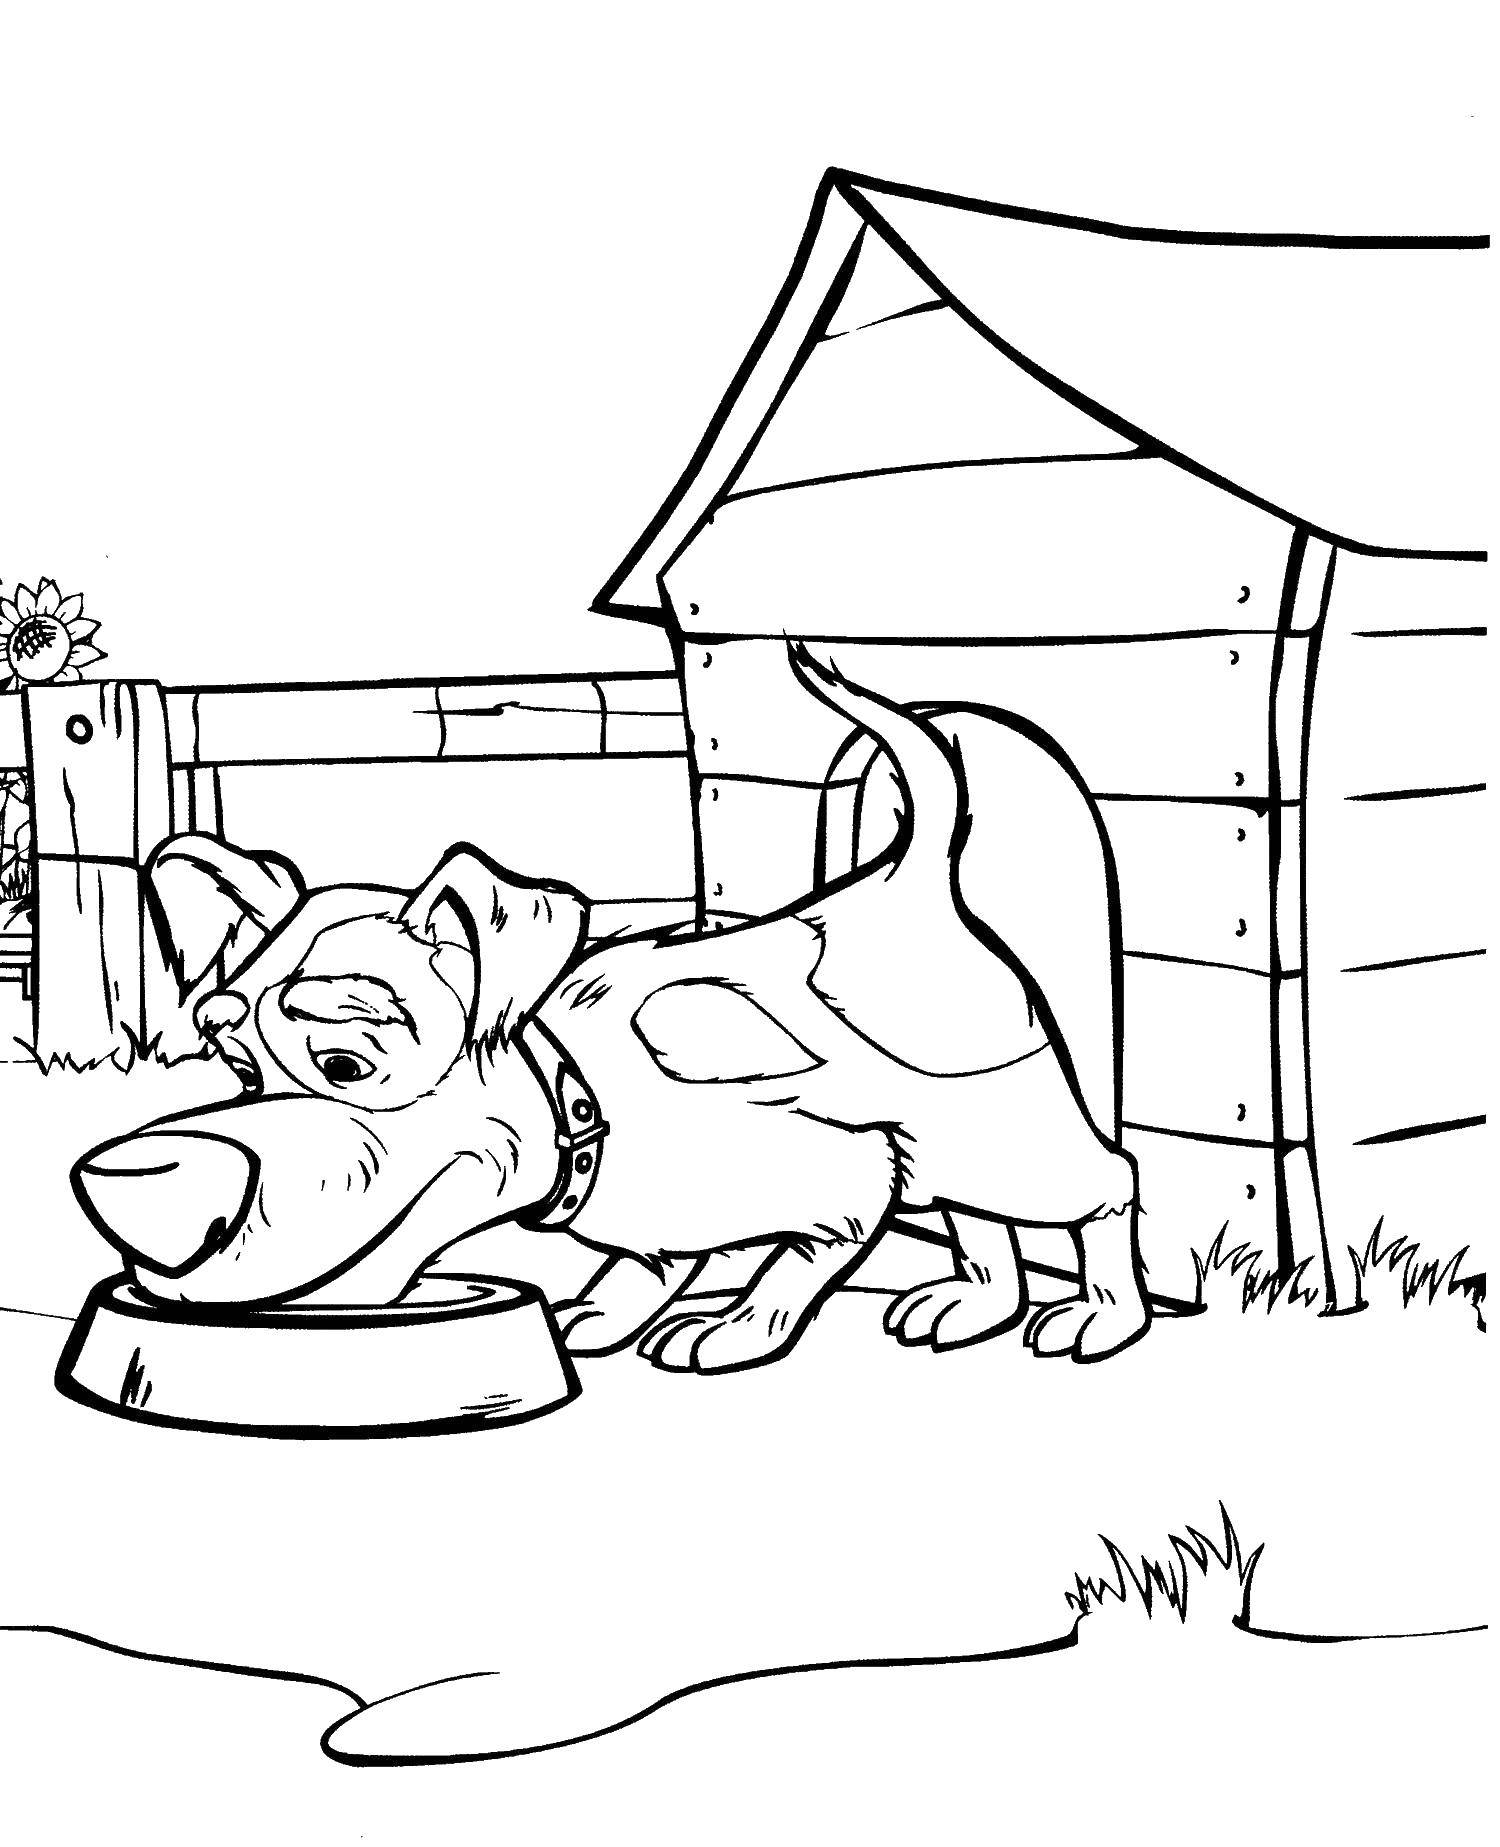 Раскраски для детей про озорную Машу из мультфильма Маша и медведь  Собака кушает